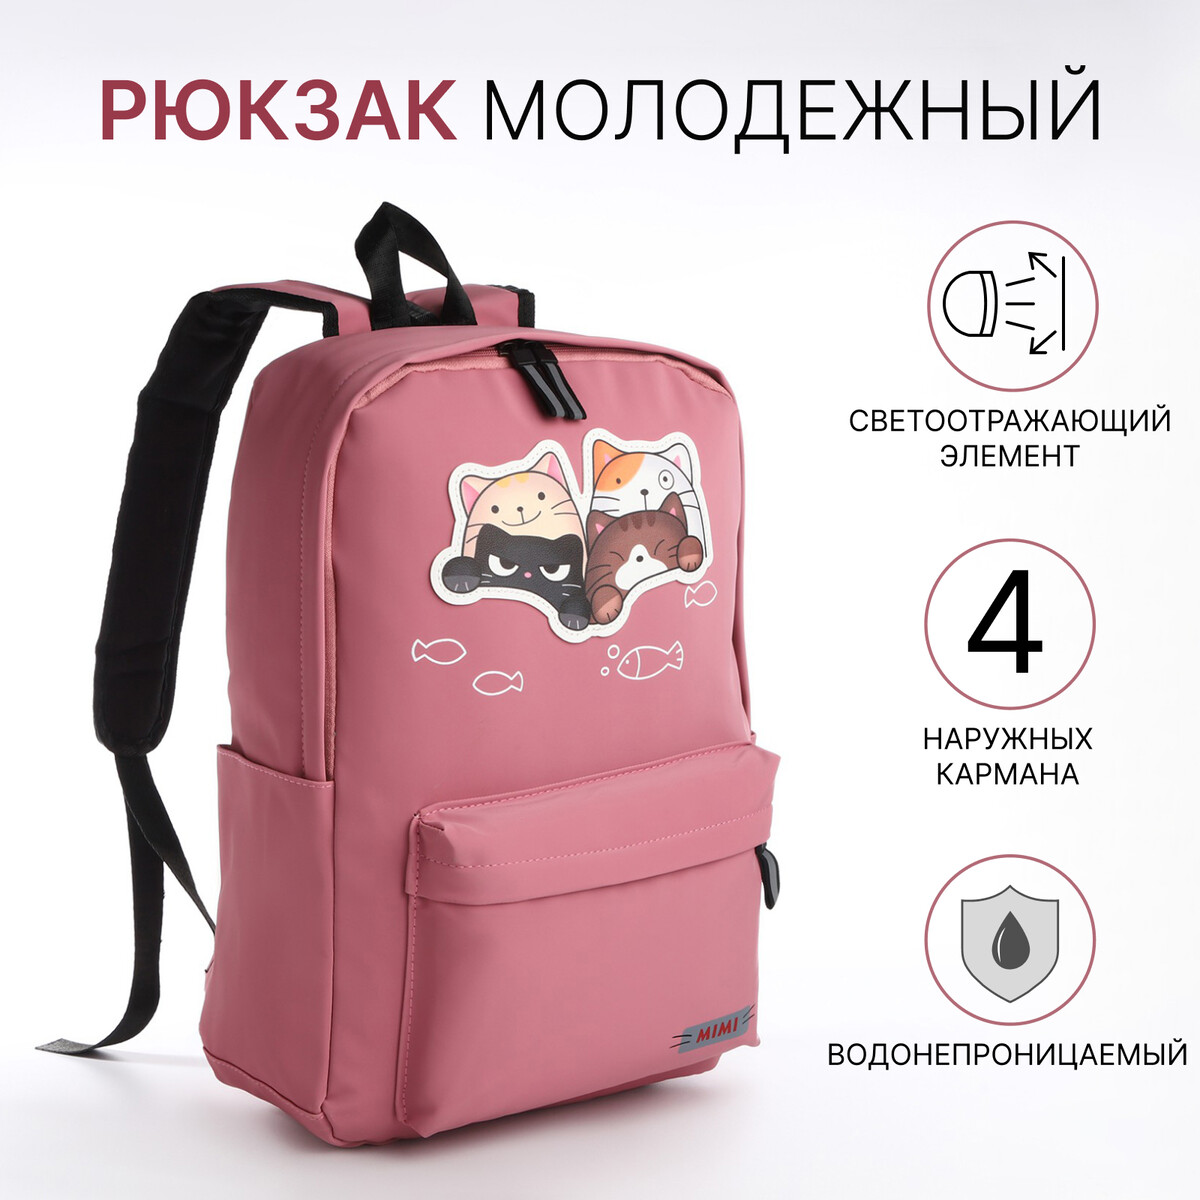 Рюкзак молодежный из текстиля на молнии, 4 кармана, цвет розовый рюкзак молодежный из текстиля 2 отдела на молниях 3 кармана розовый